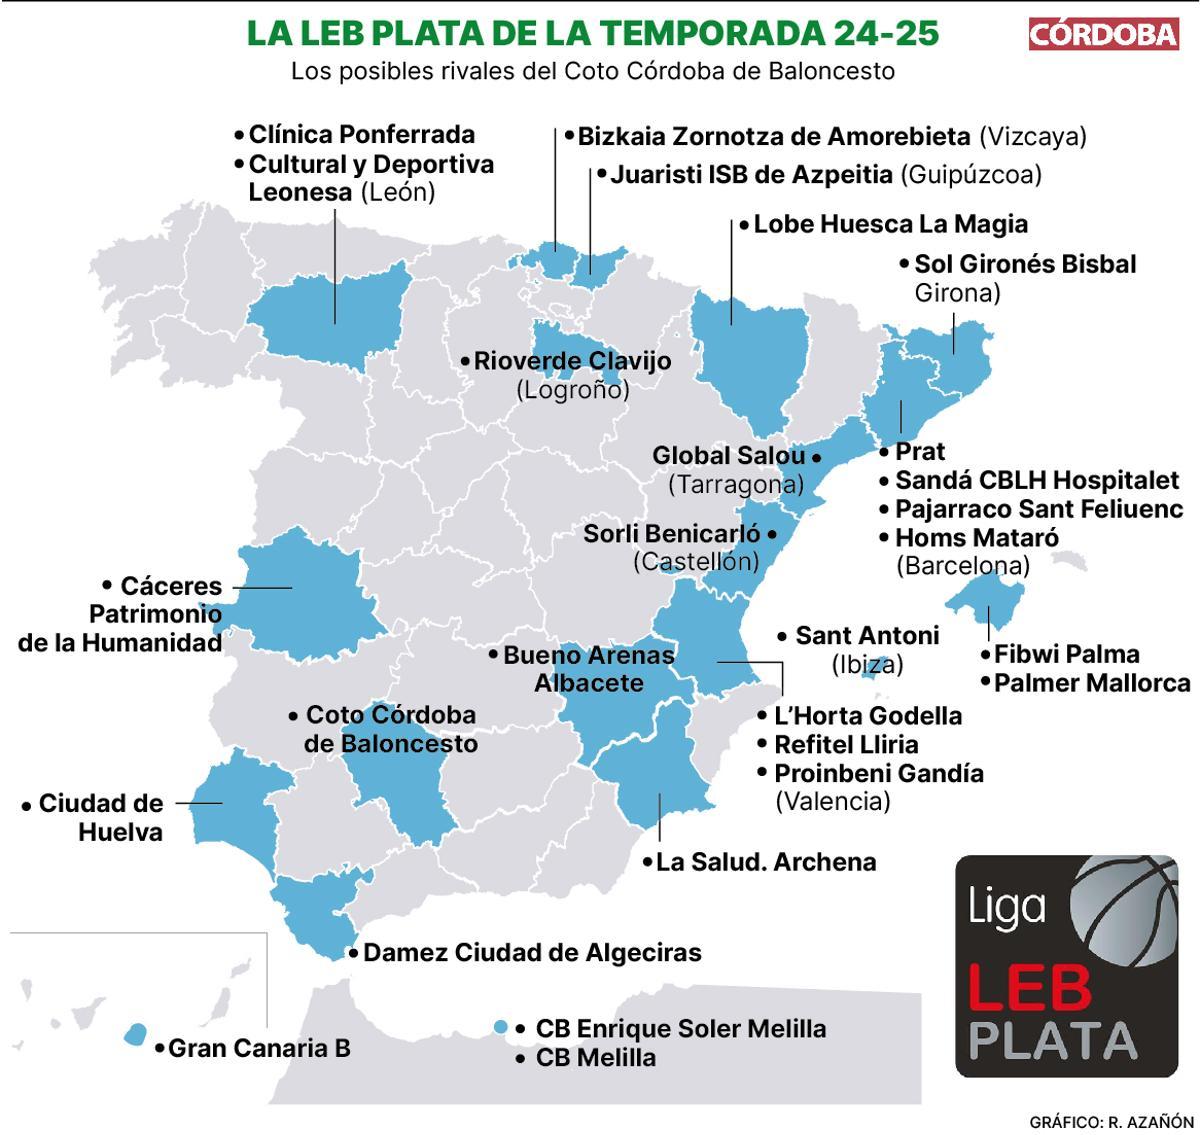 El mapa de la Leb Plata en la próxima temporada 24-25.